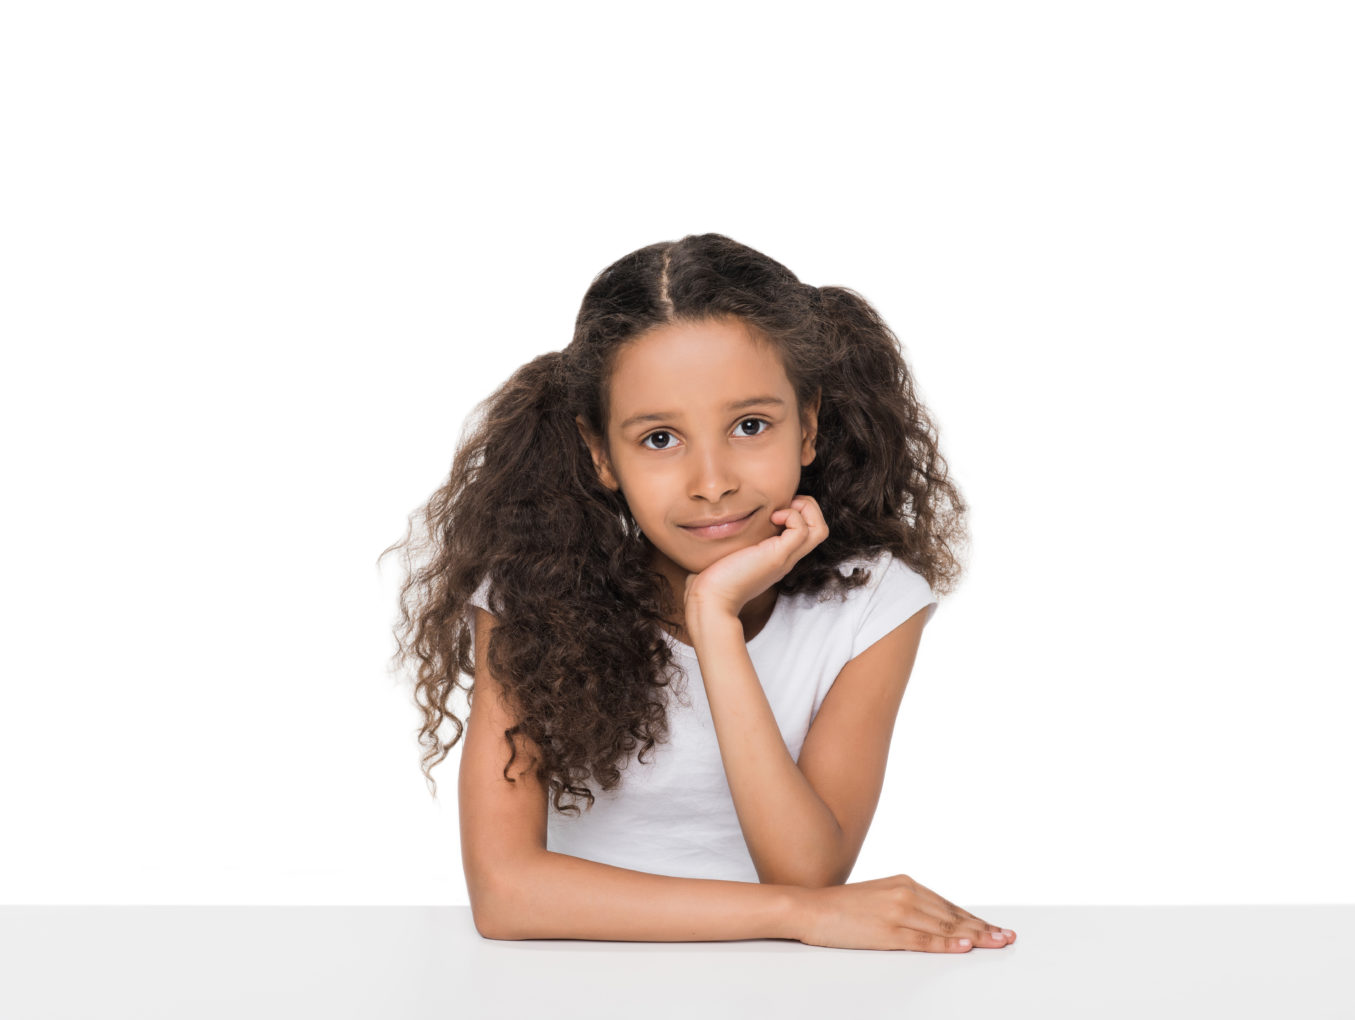 הסרת שיער בילדות - באיזה גיל אפשר להתחיל